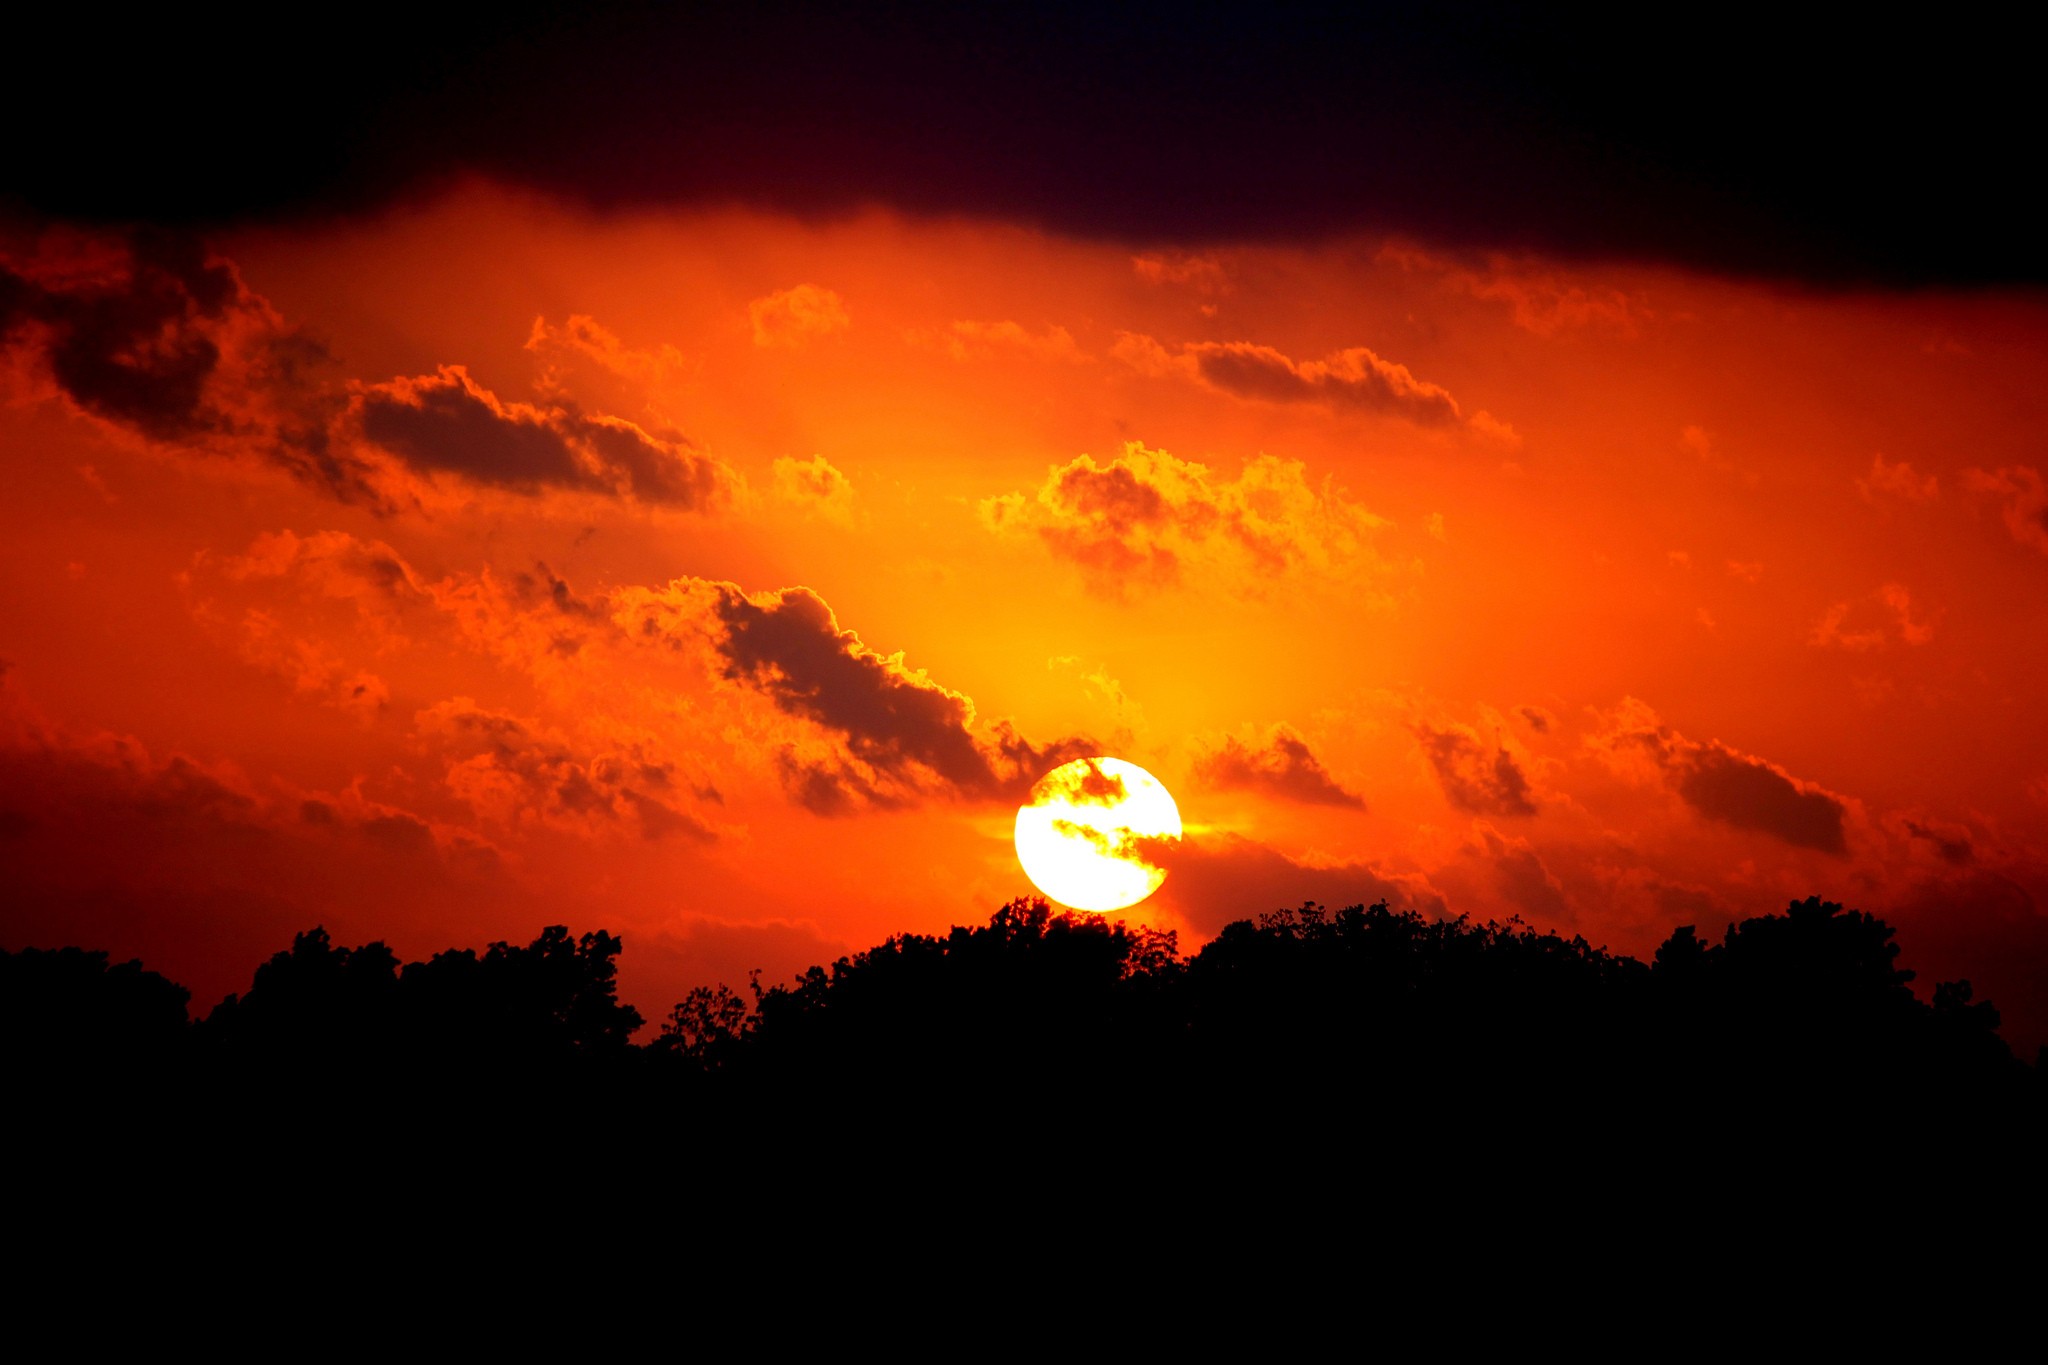 General 2048x1365 nature orange sky skyscape silhouette dark sunlight Sun clouds